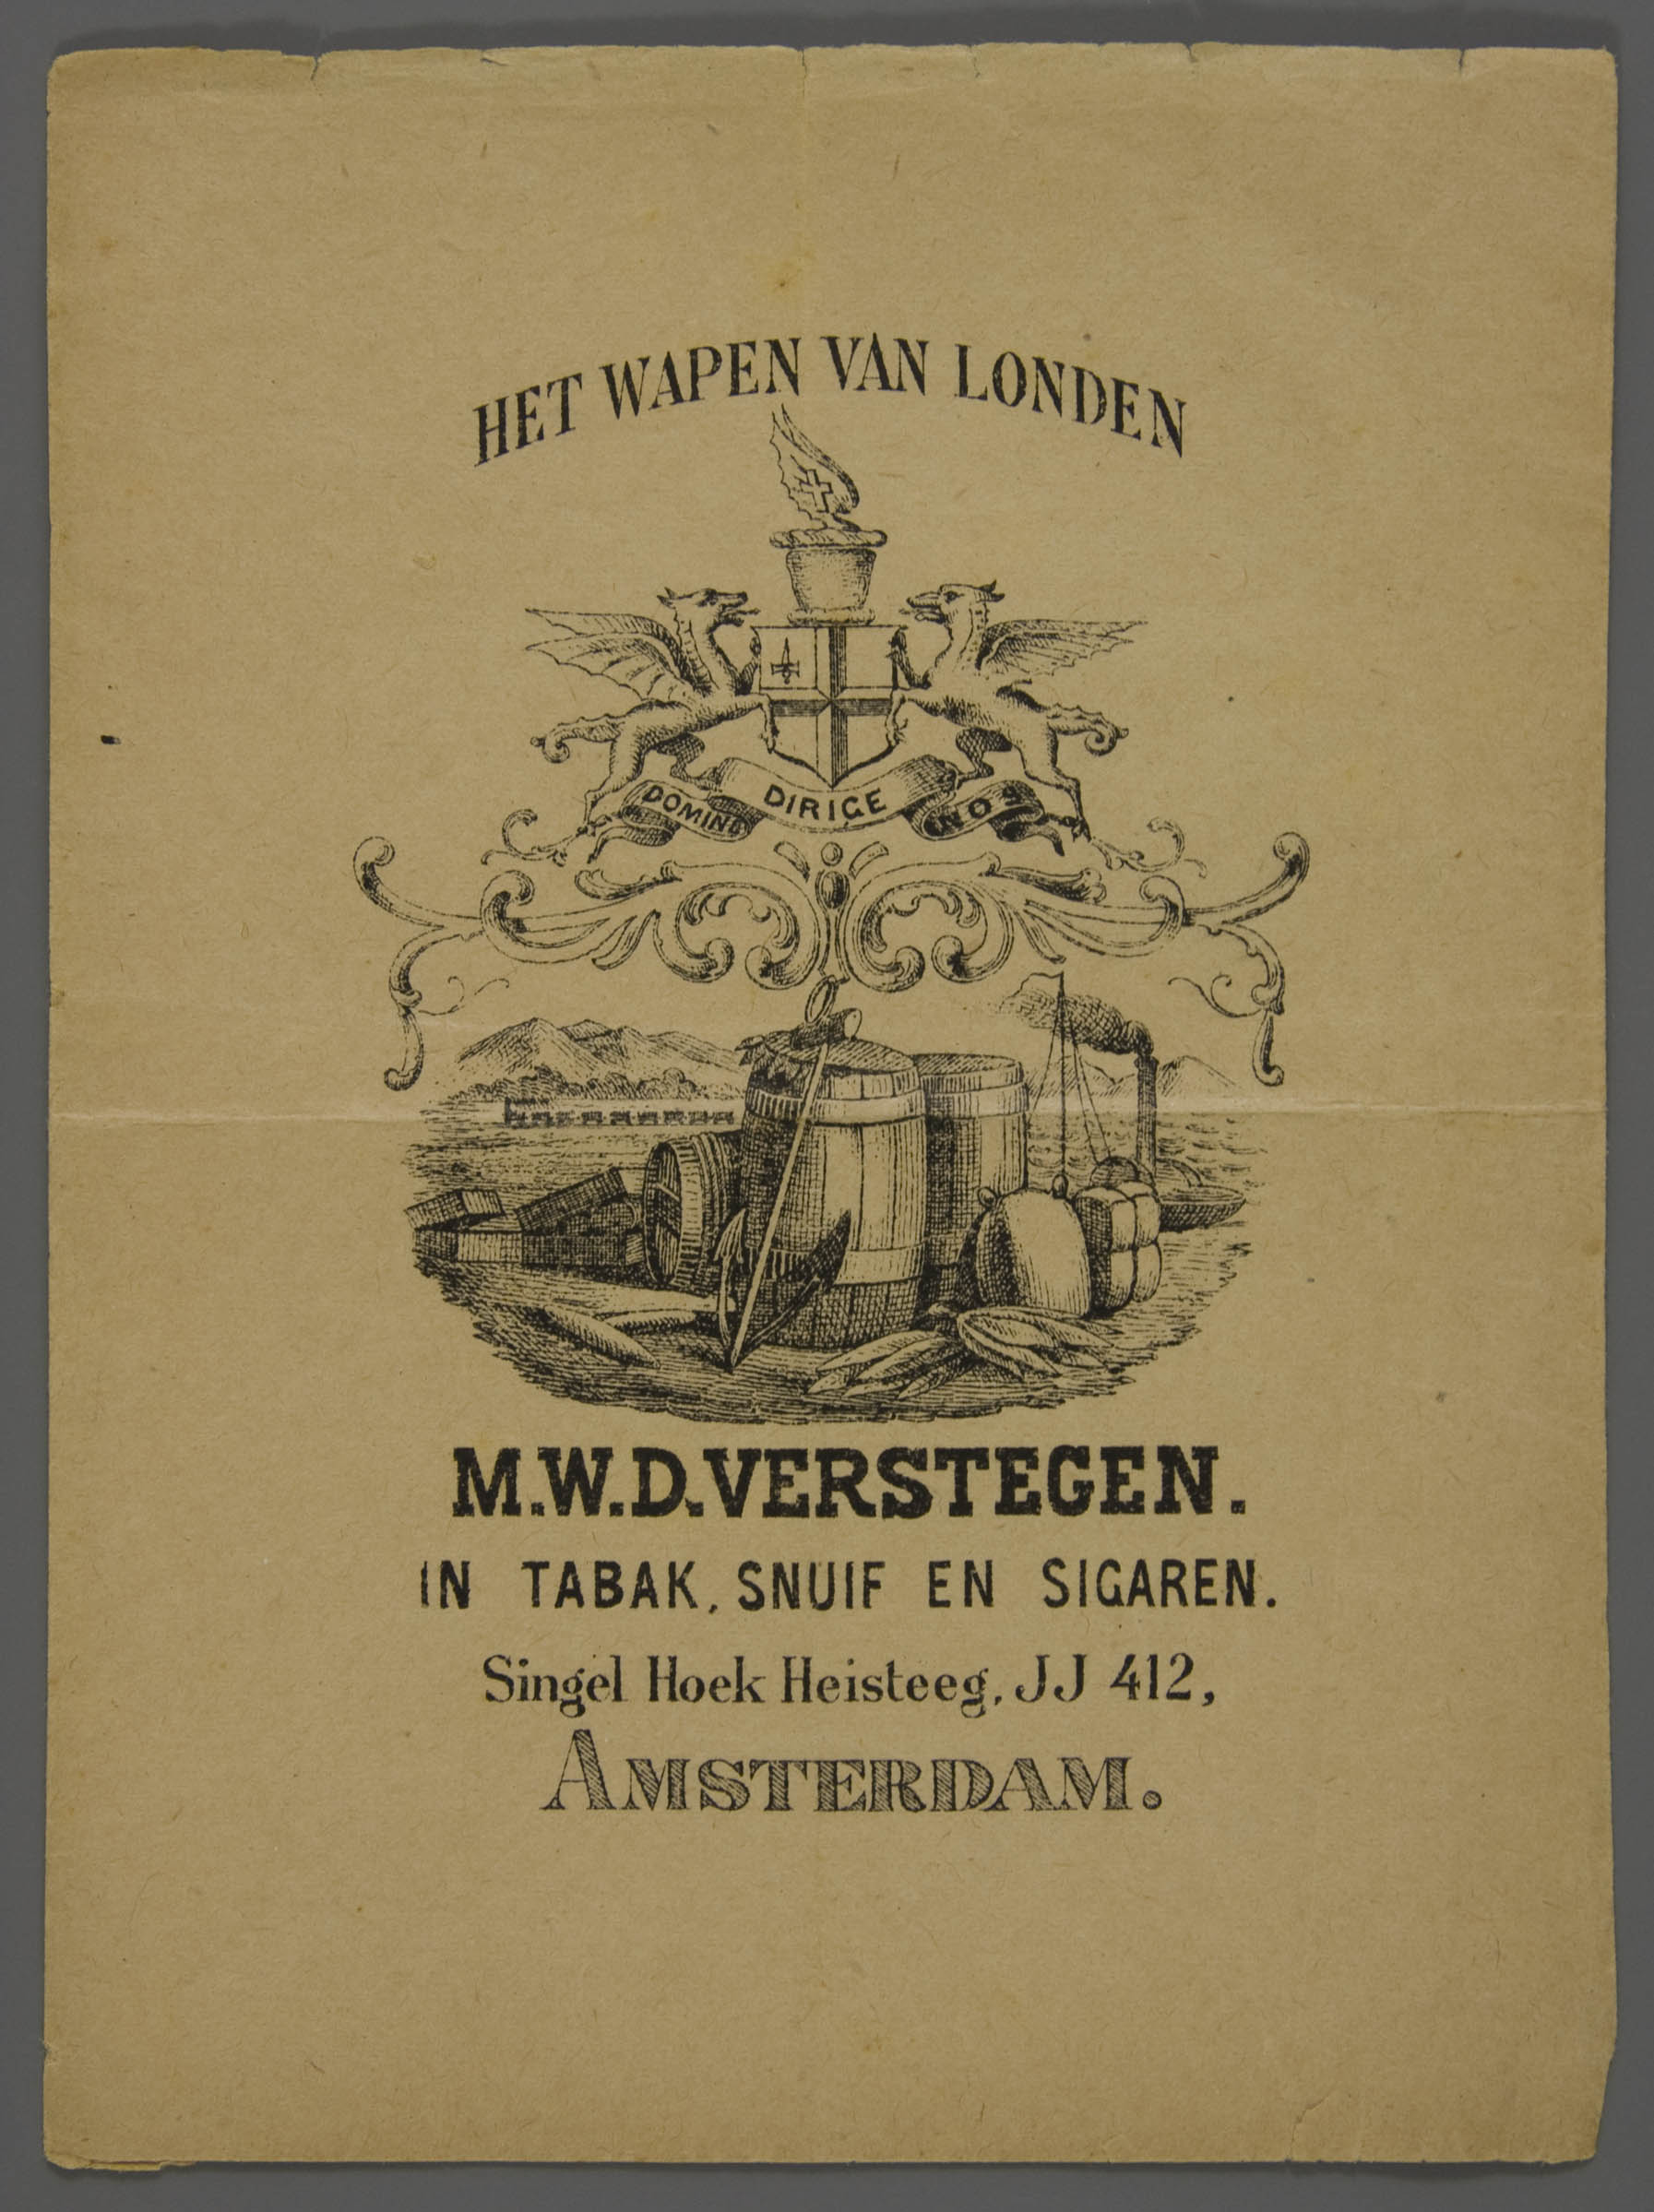 11-25.993-amsterdam-cigar-bag-wapen-londen-1